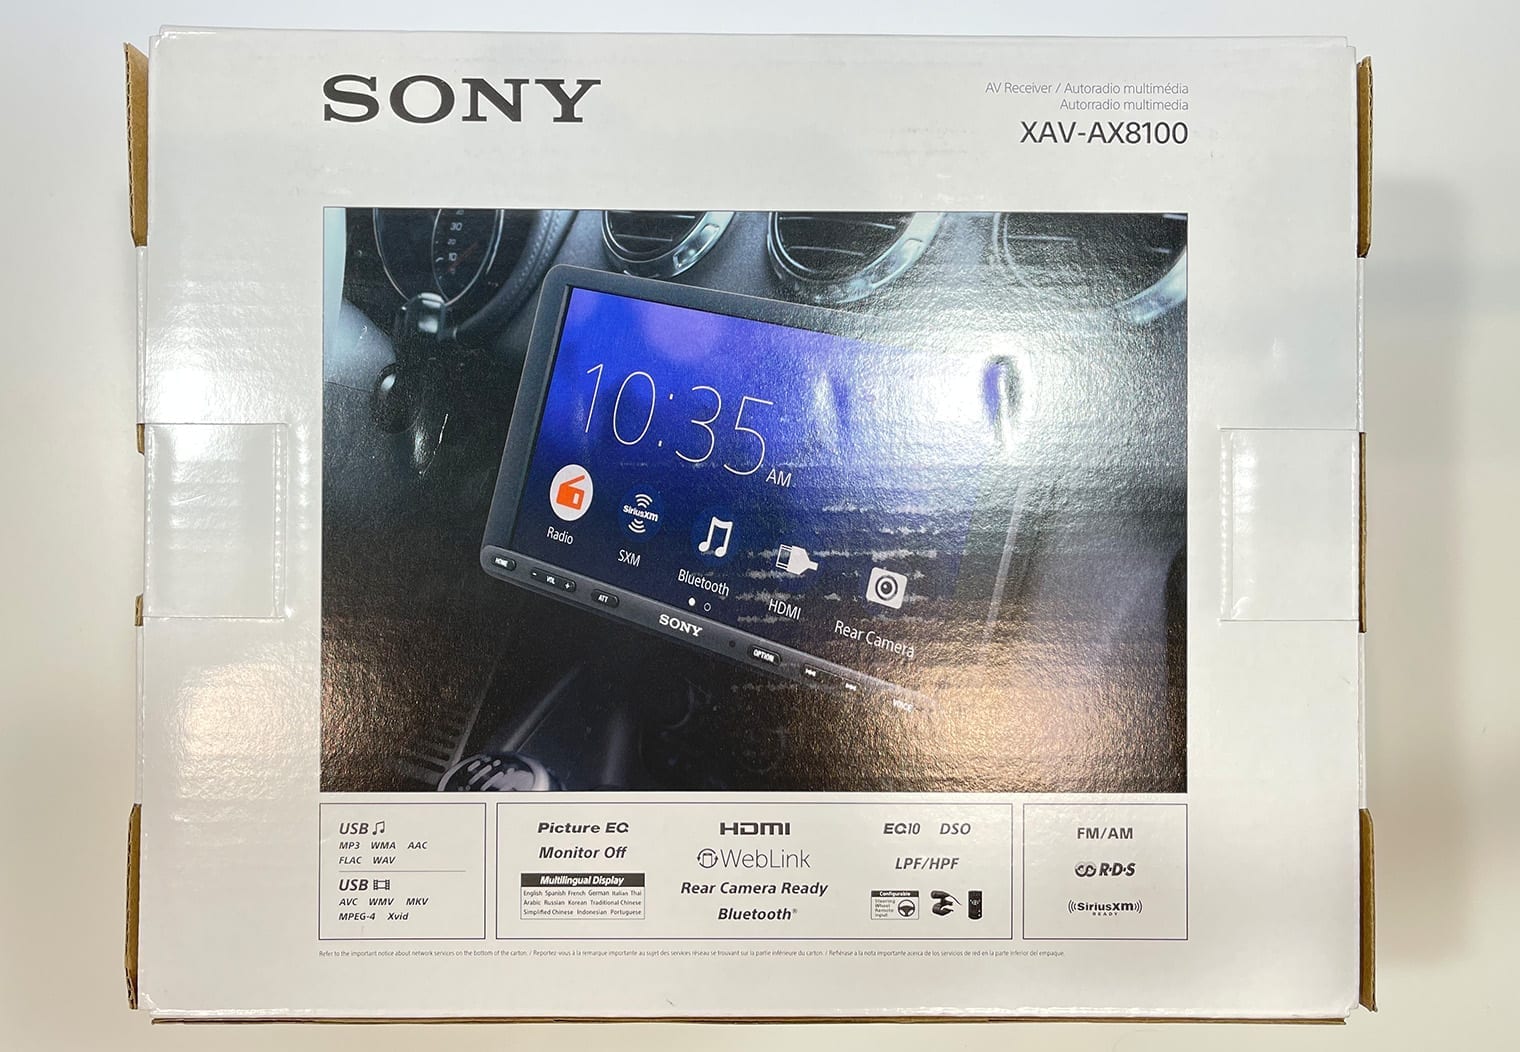 Sony XAV-AX8100 back of the box